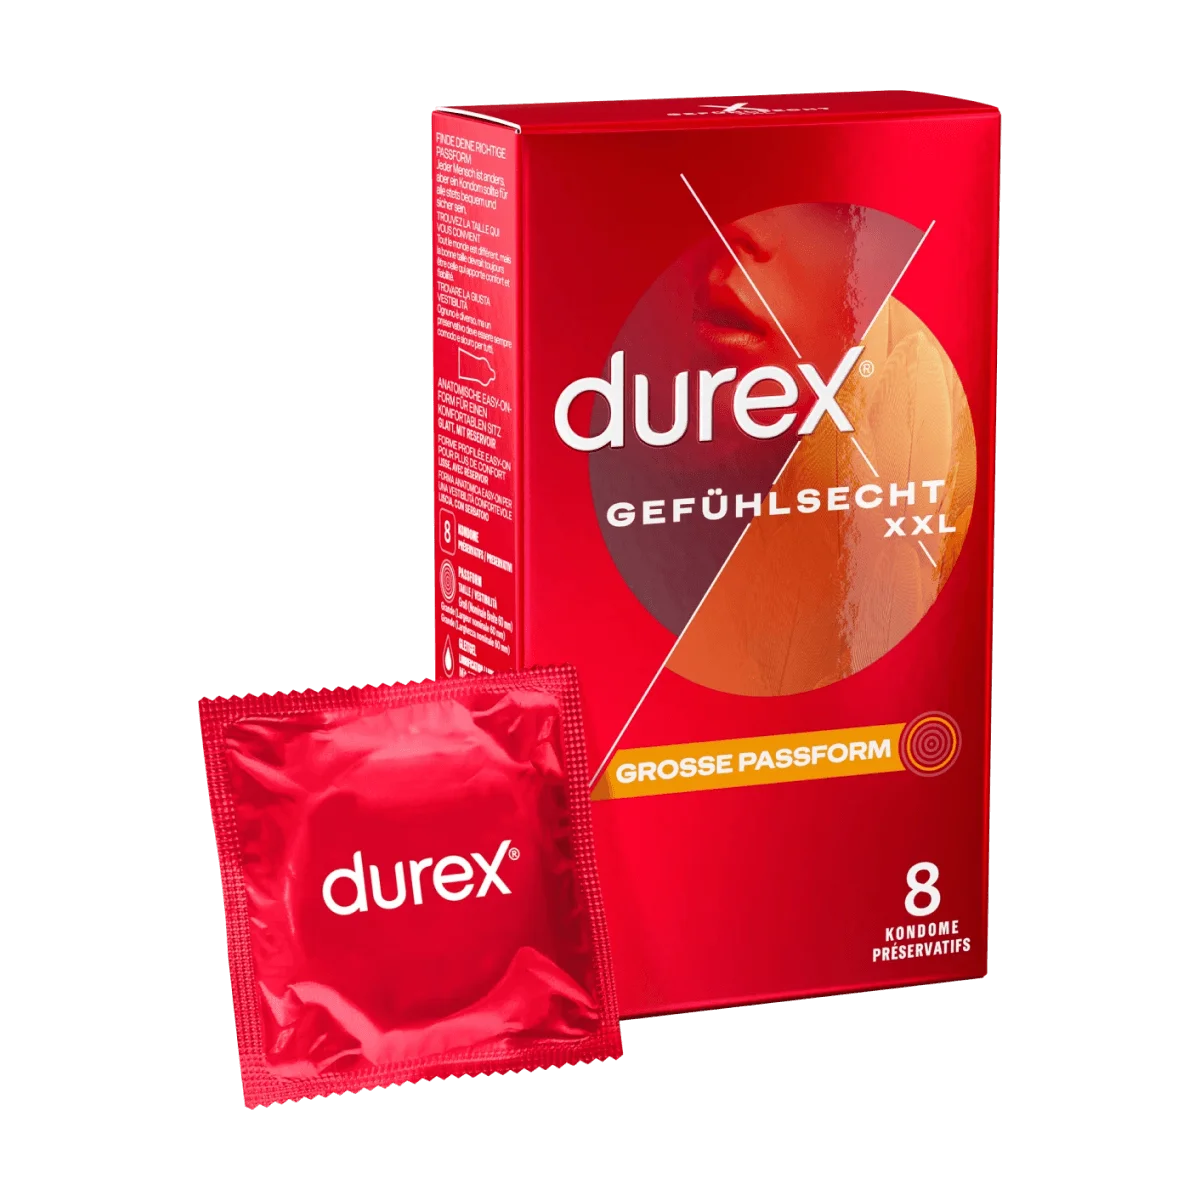 Durex Kondome Gefühlsecht XXL, Breite 60mm, 8 Stk